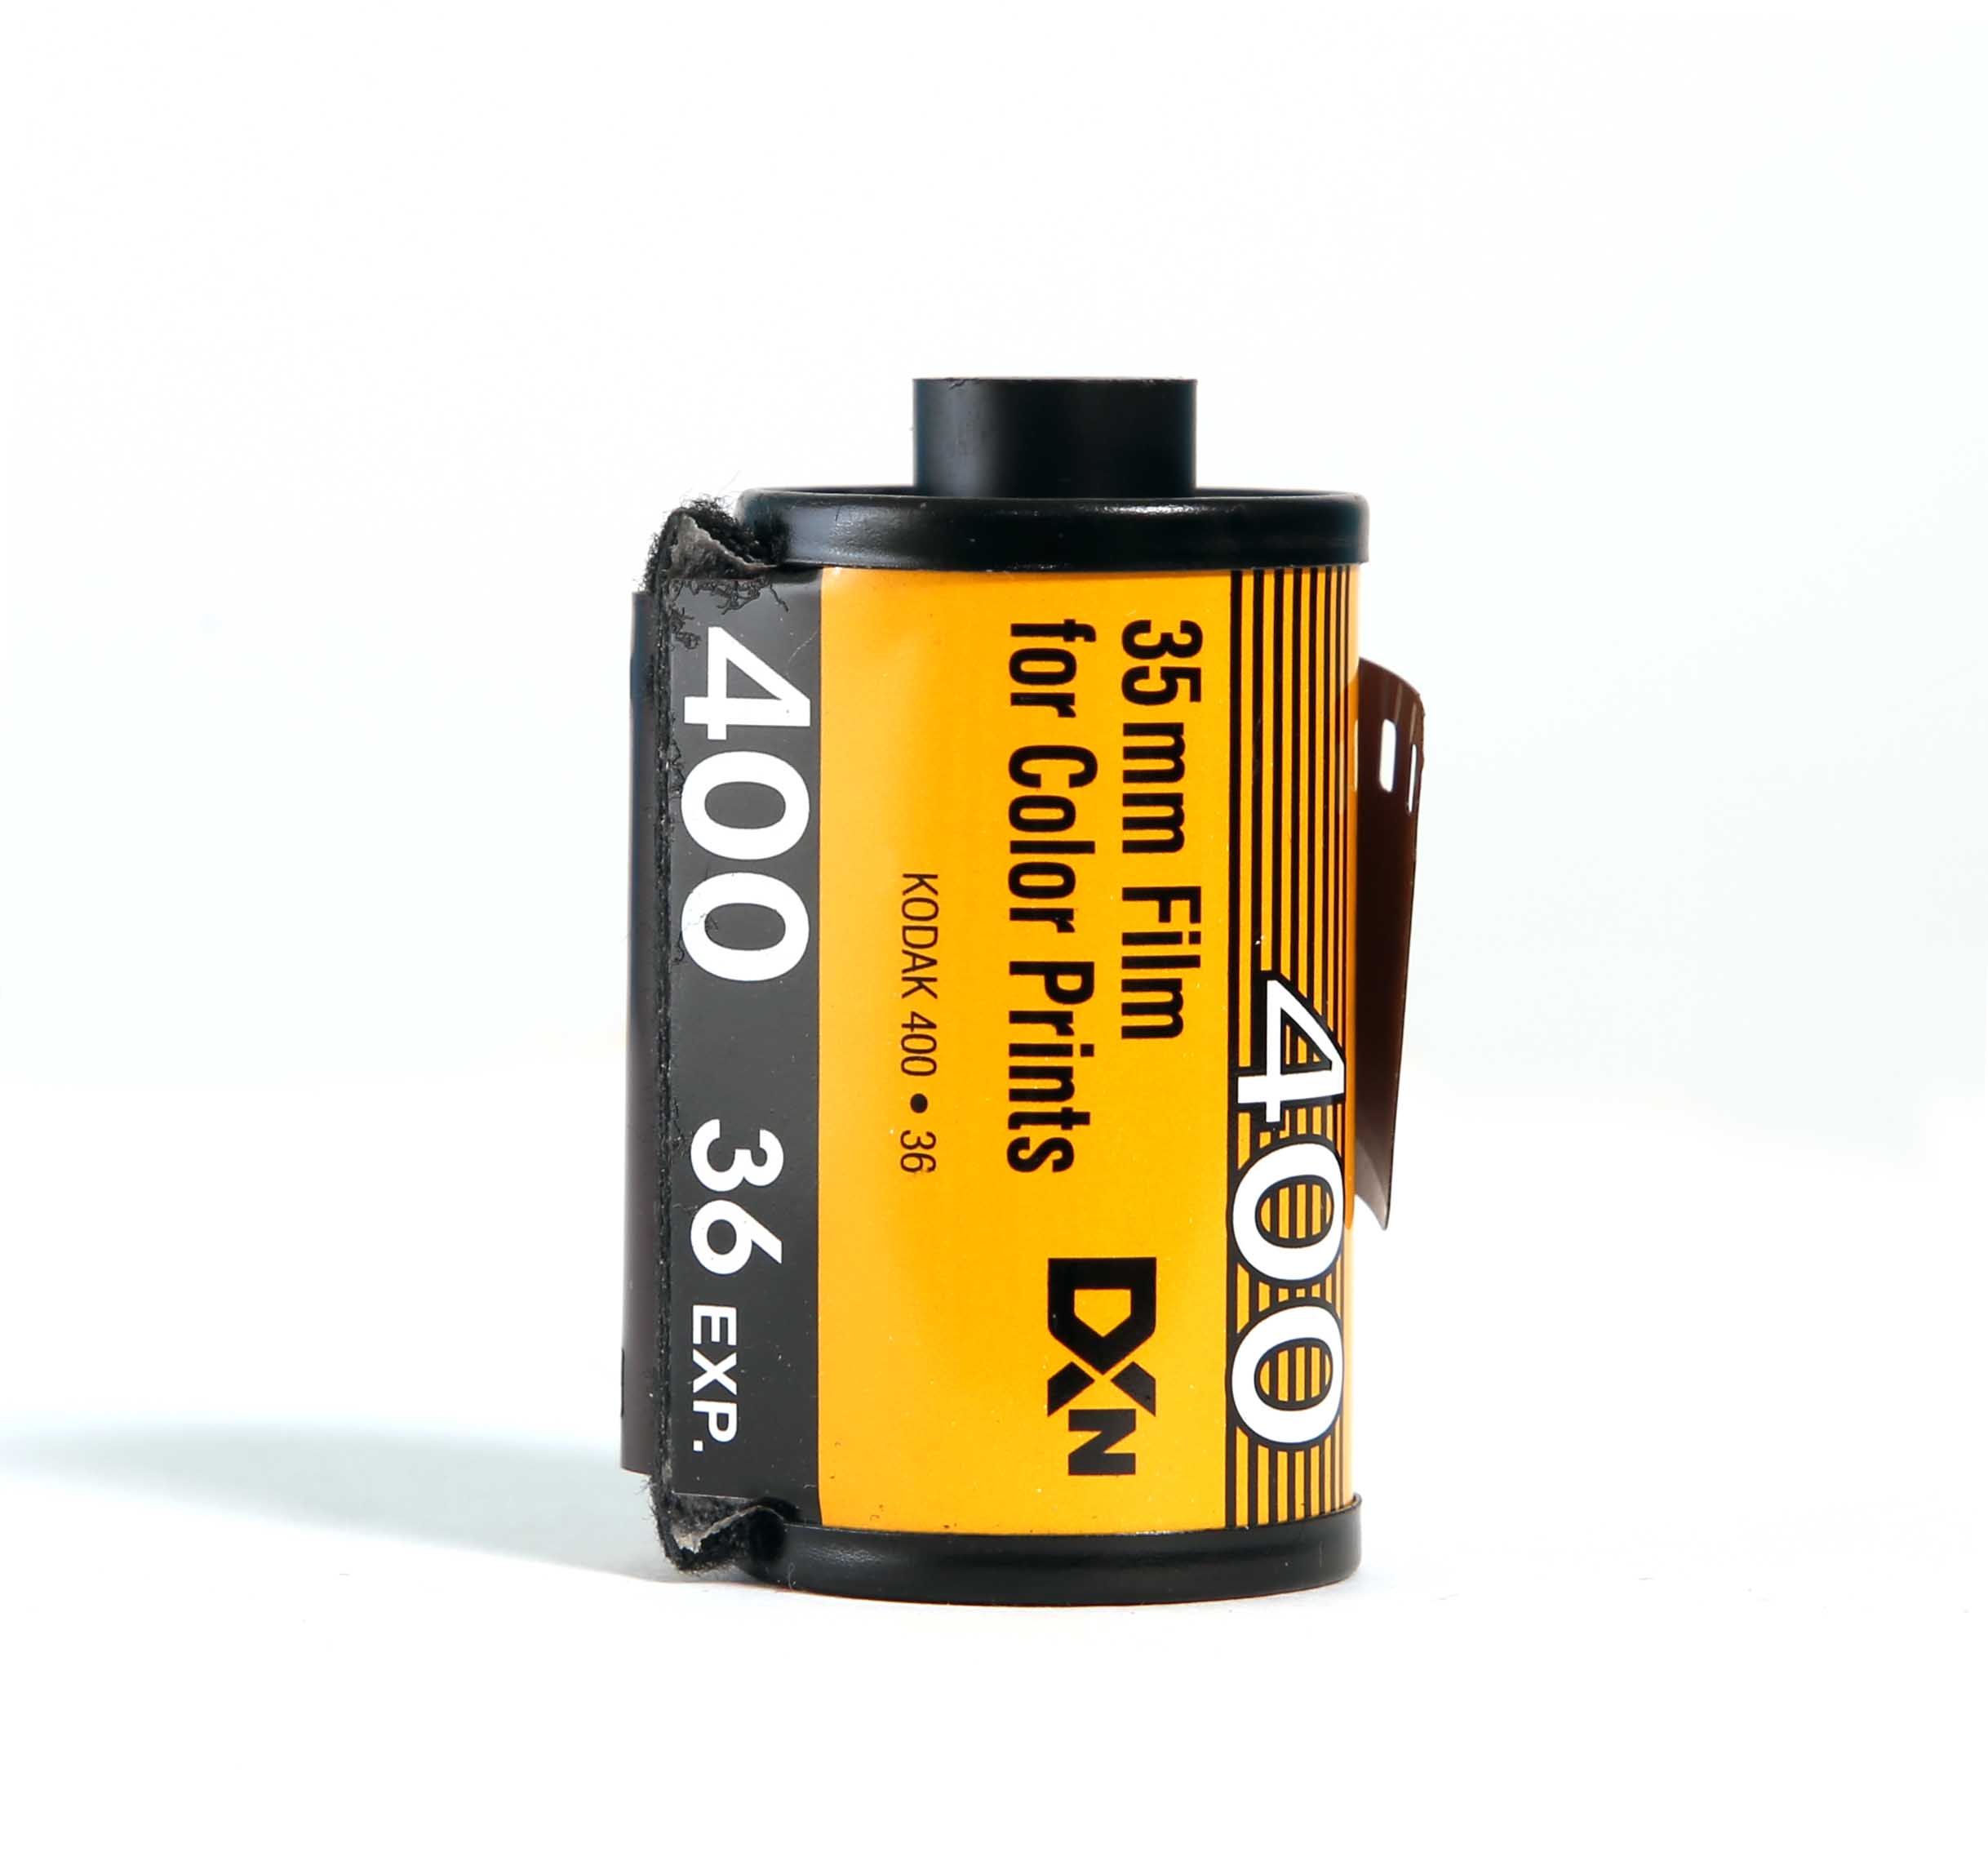 Kodak コダック ColorPlus ISO 400 36枚撮り まとめて 60本 カラーネガ フィルム